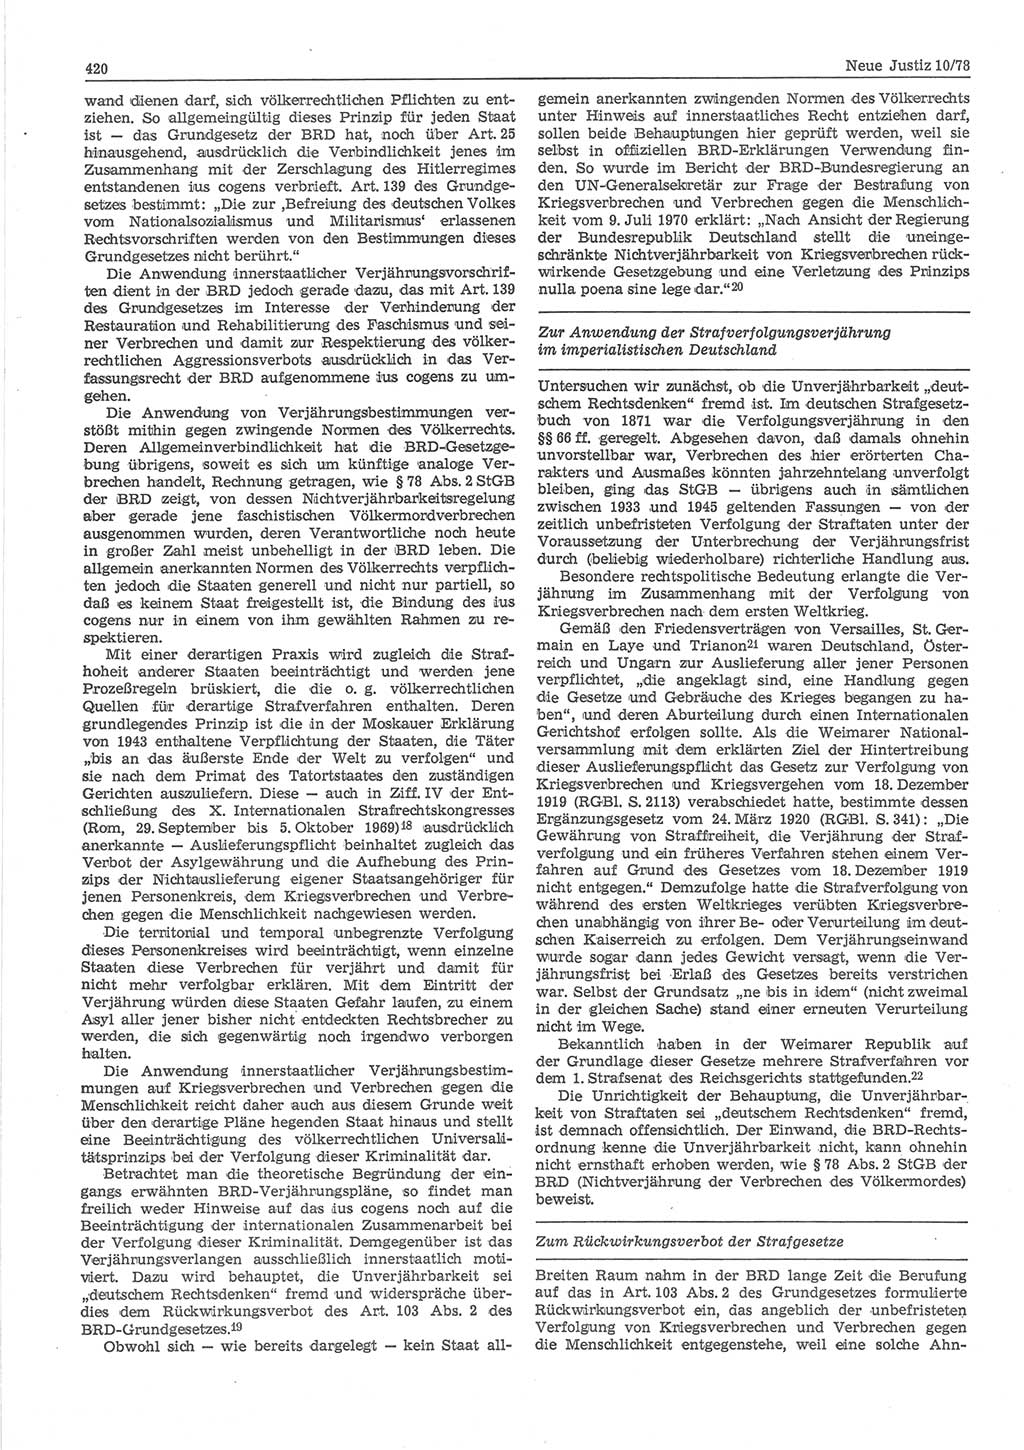 Neue Justiz (NJ), Zeitschrift für sozialistisches Recht und Gesetzlichkeit [Deutsche Demokratische Republik (DDR)], 32. Jahrgang 1978, Seite 420 (NJ DDR 1978, S. 420)